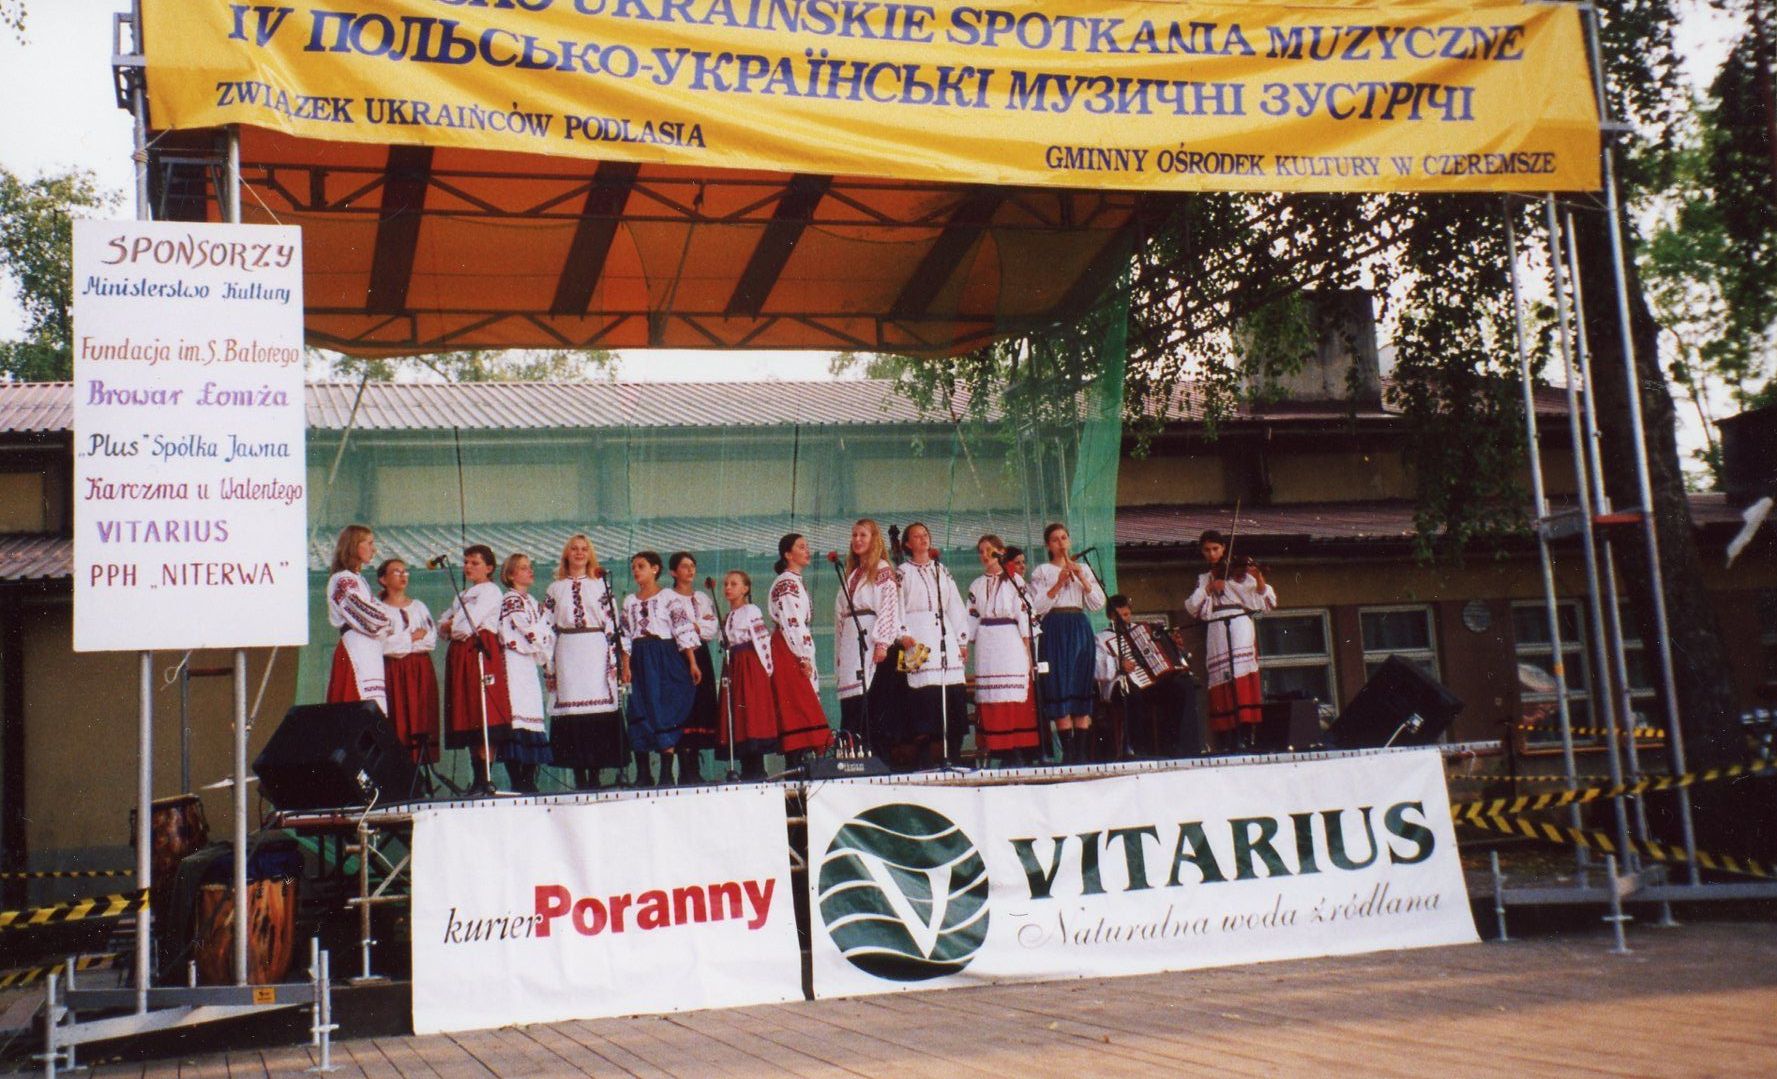 IV Polsko Ukraińskie Spotkania Muzyczne w Czeremsze 07.2002